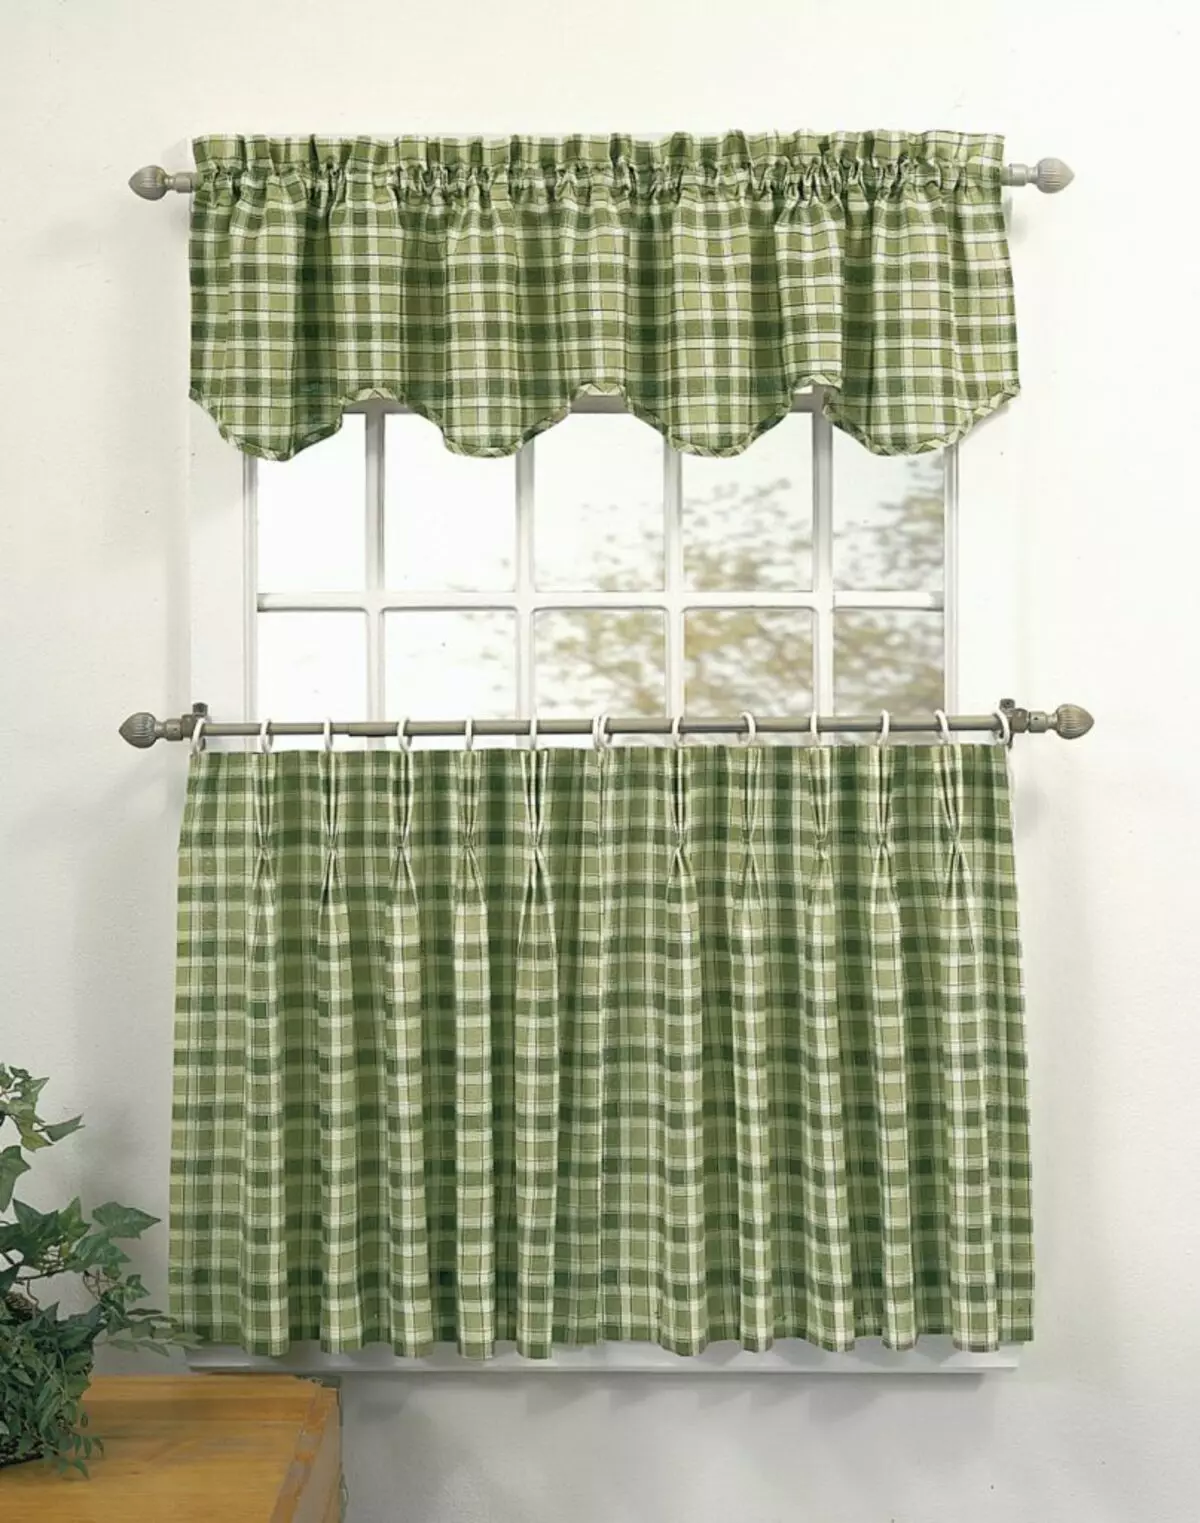 Checkered curtain